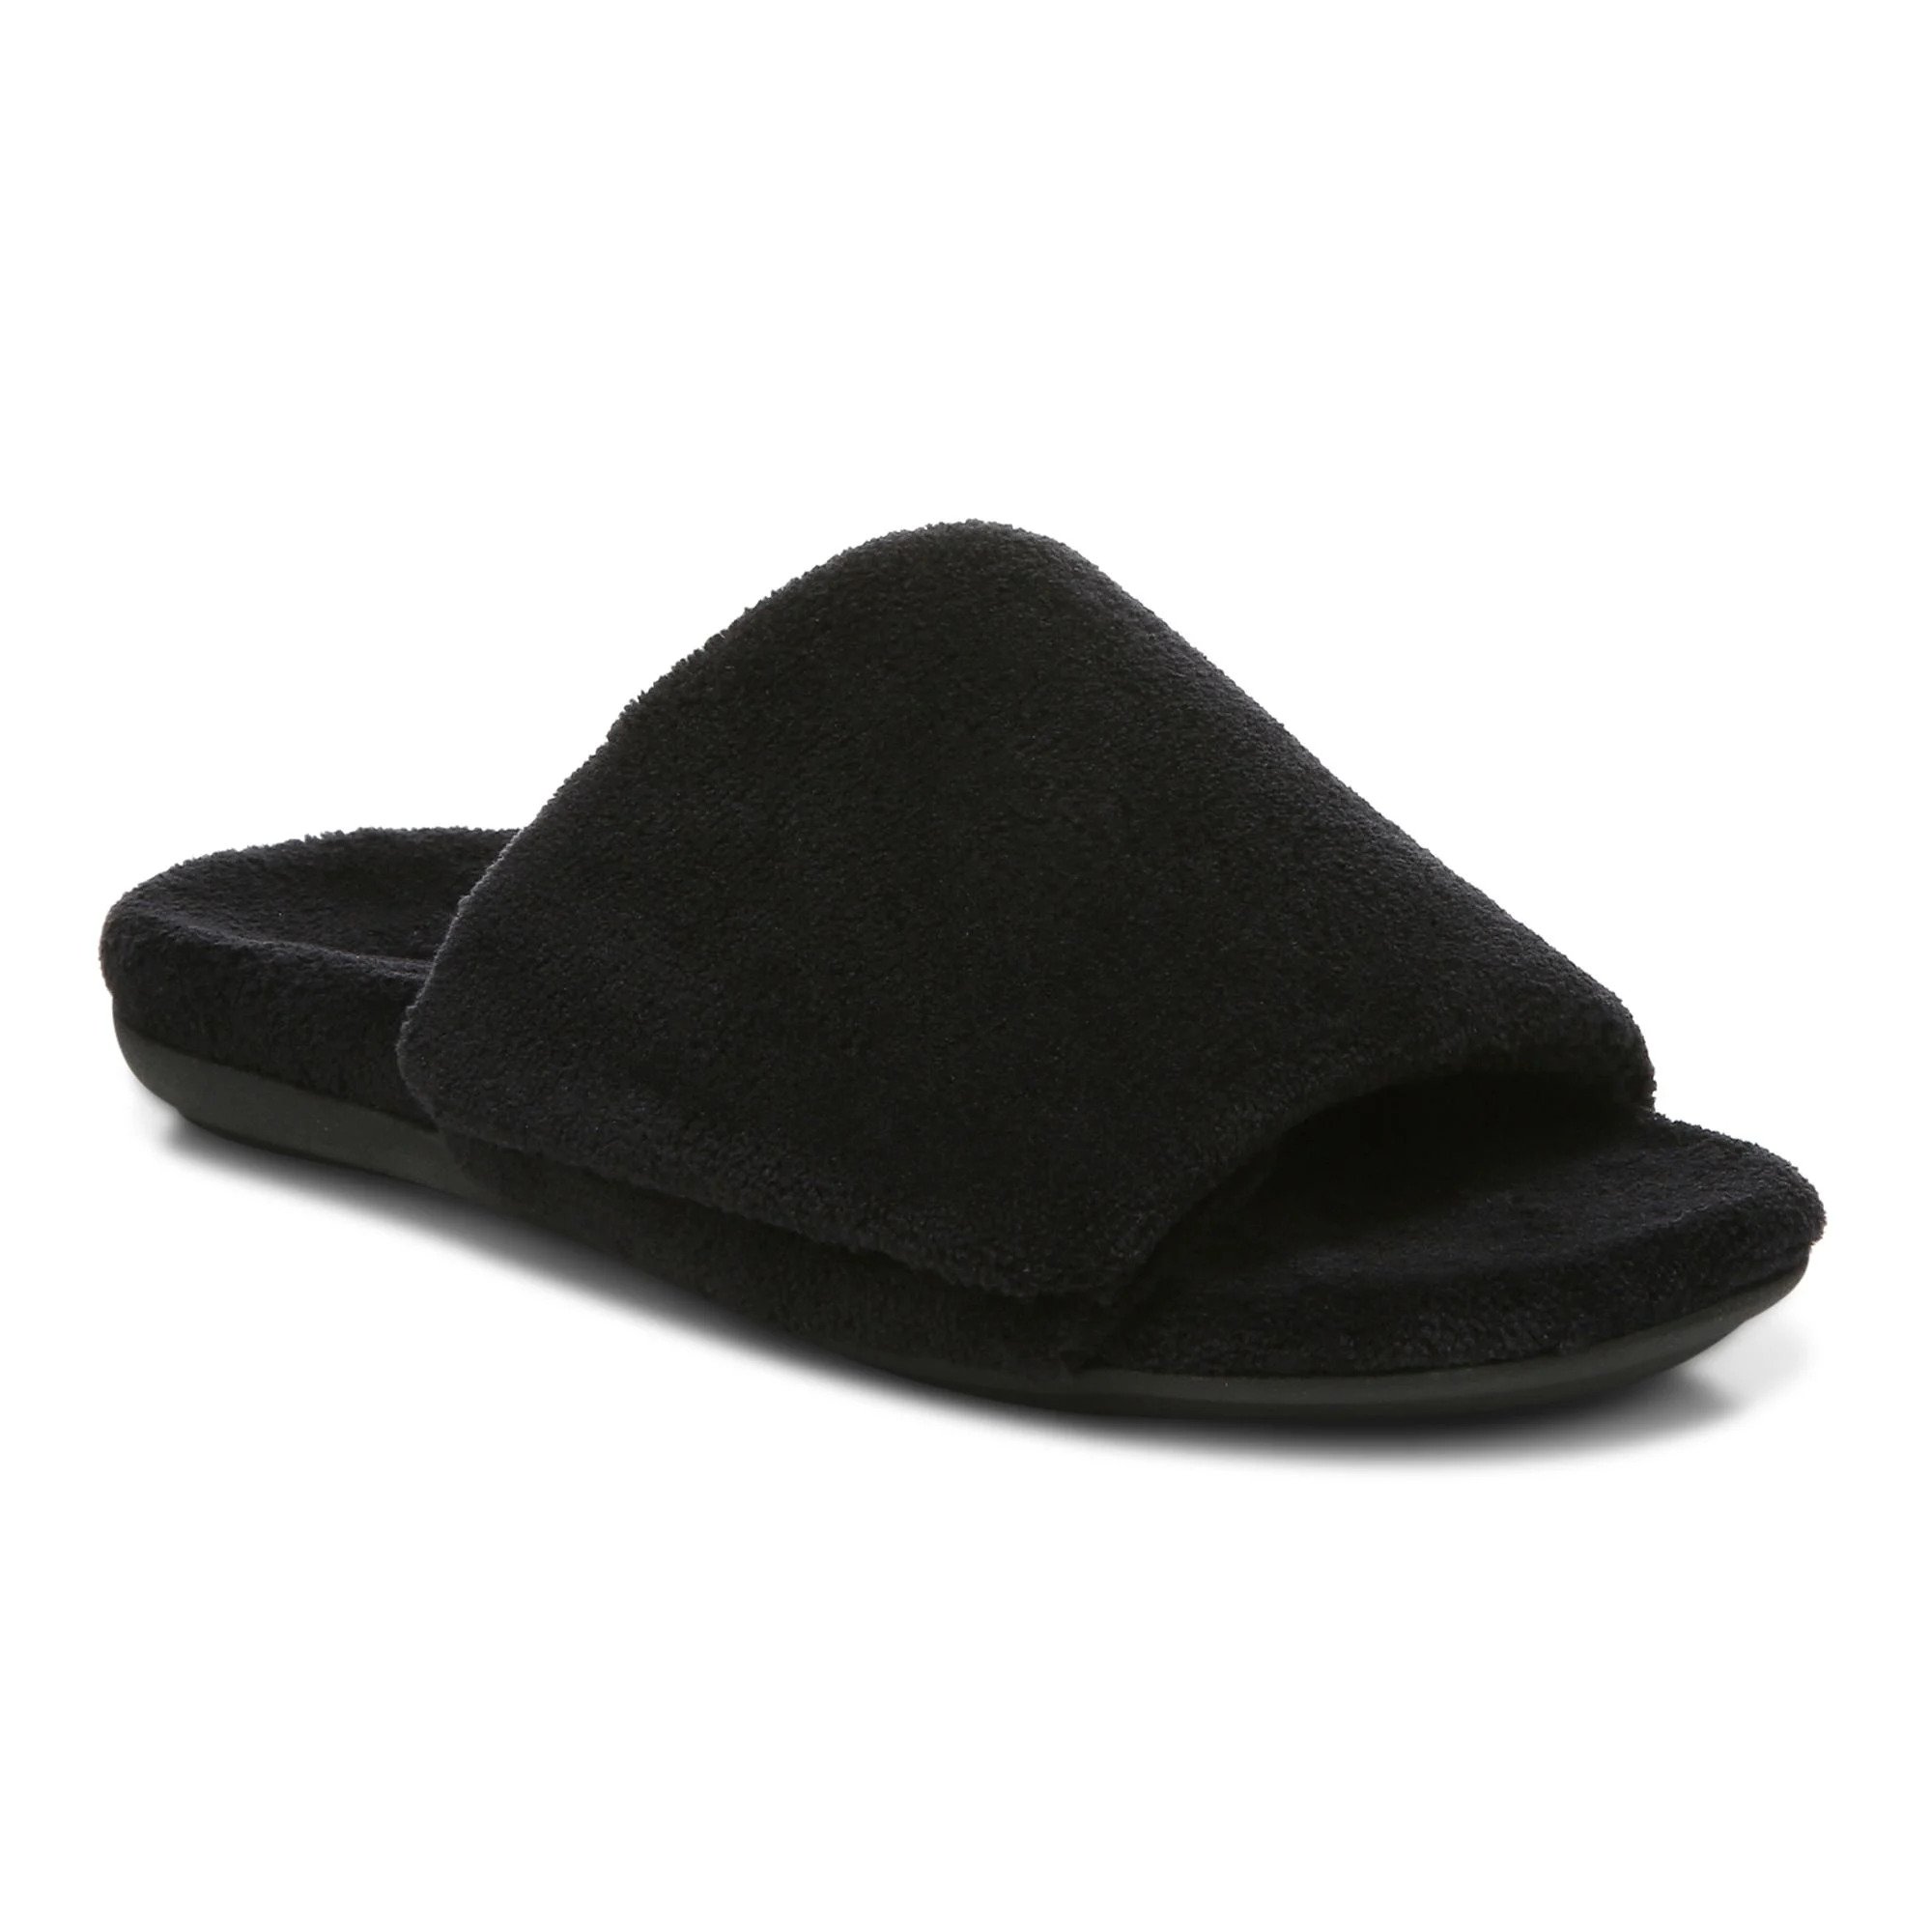 photo of black vionic slipper